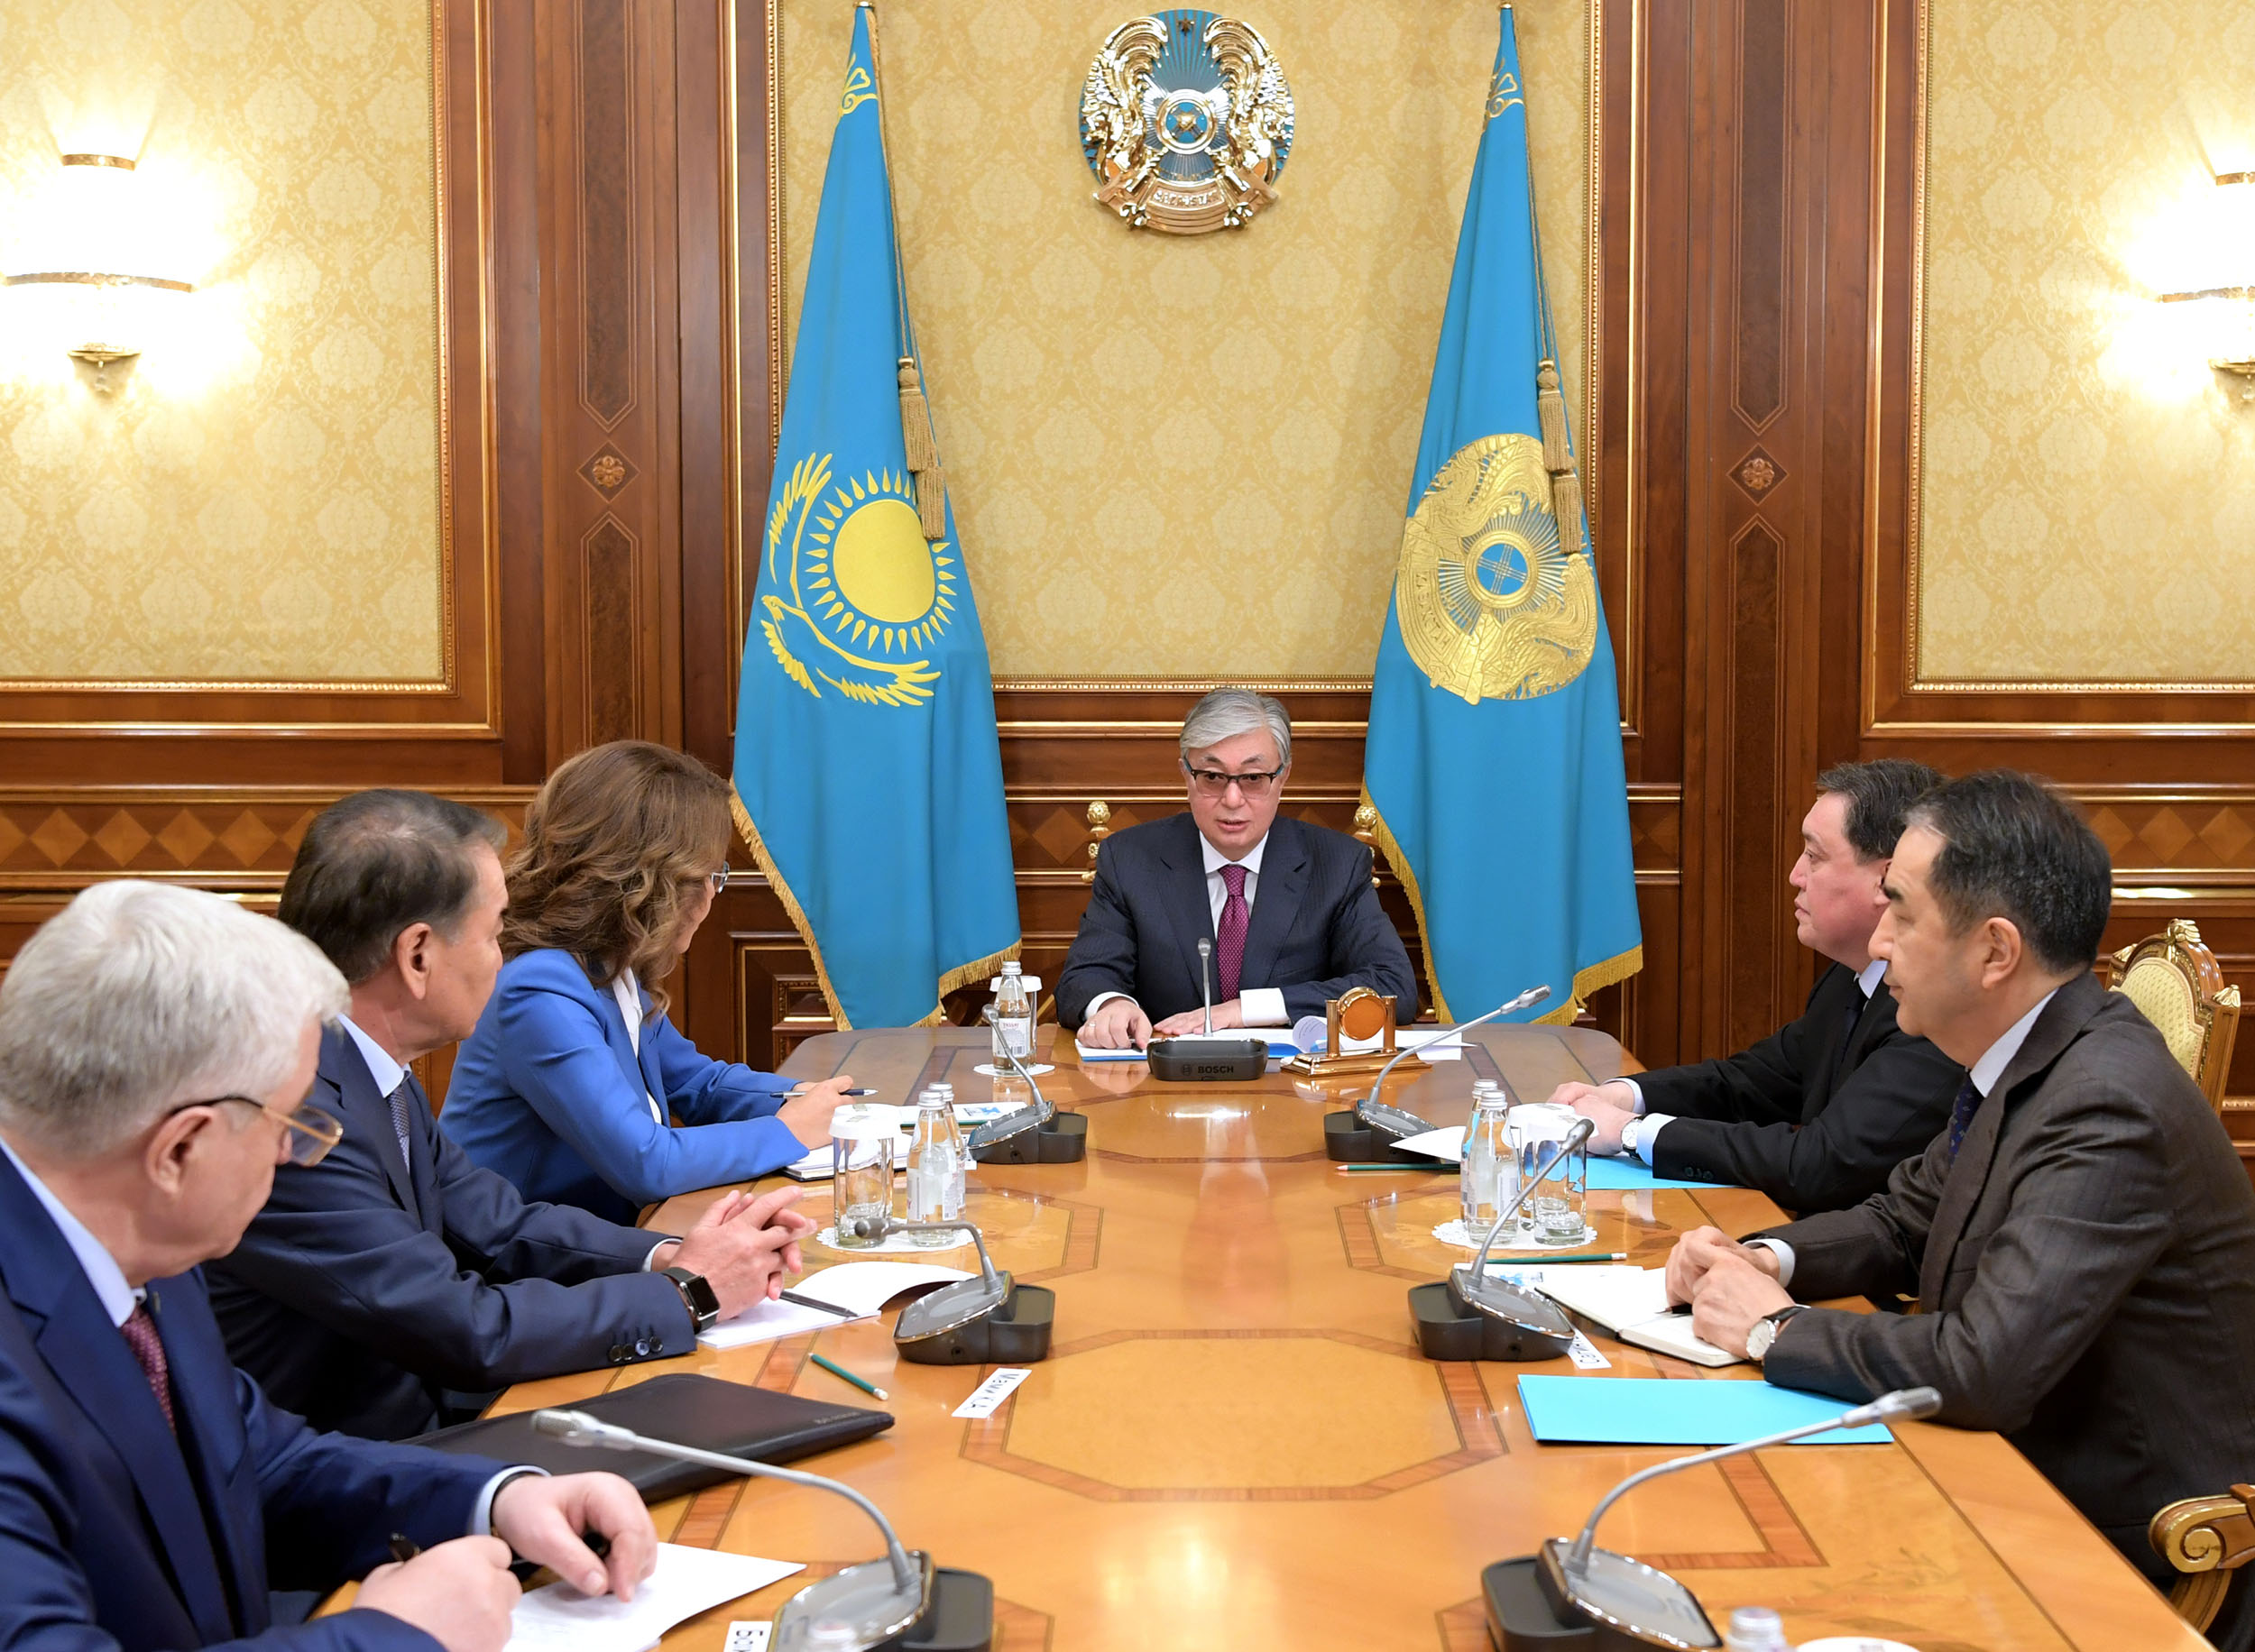 Касым-Жомарт Токаев обсудил с руководством Парламента и Правительства вопросы внутренней политики Казахстана